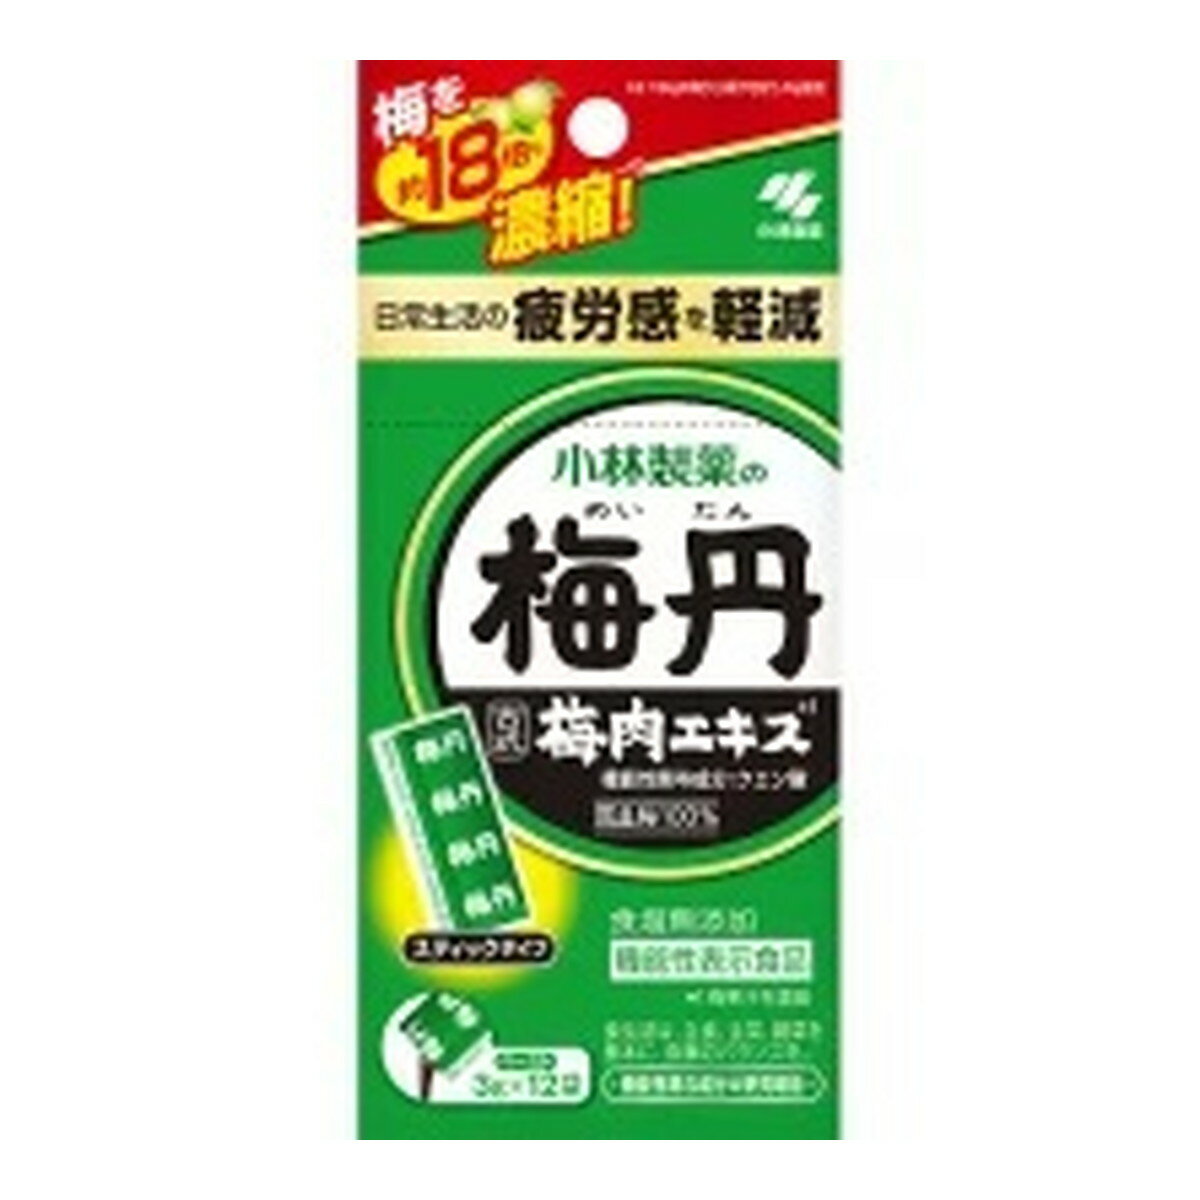 小林製薬 梅丹 梅肉エキス 機能性表示食品 36g 3g 12袋 